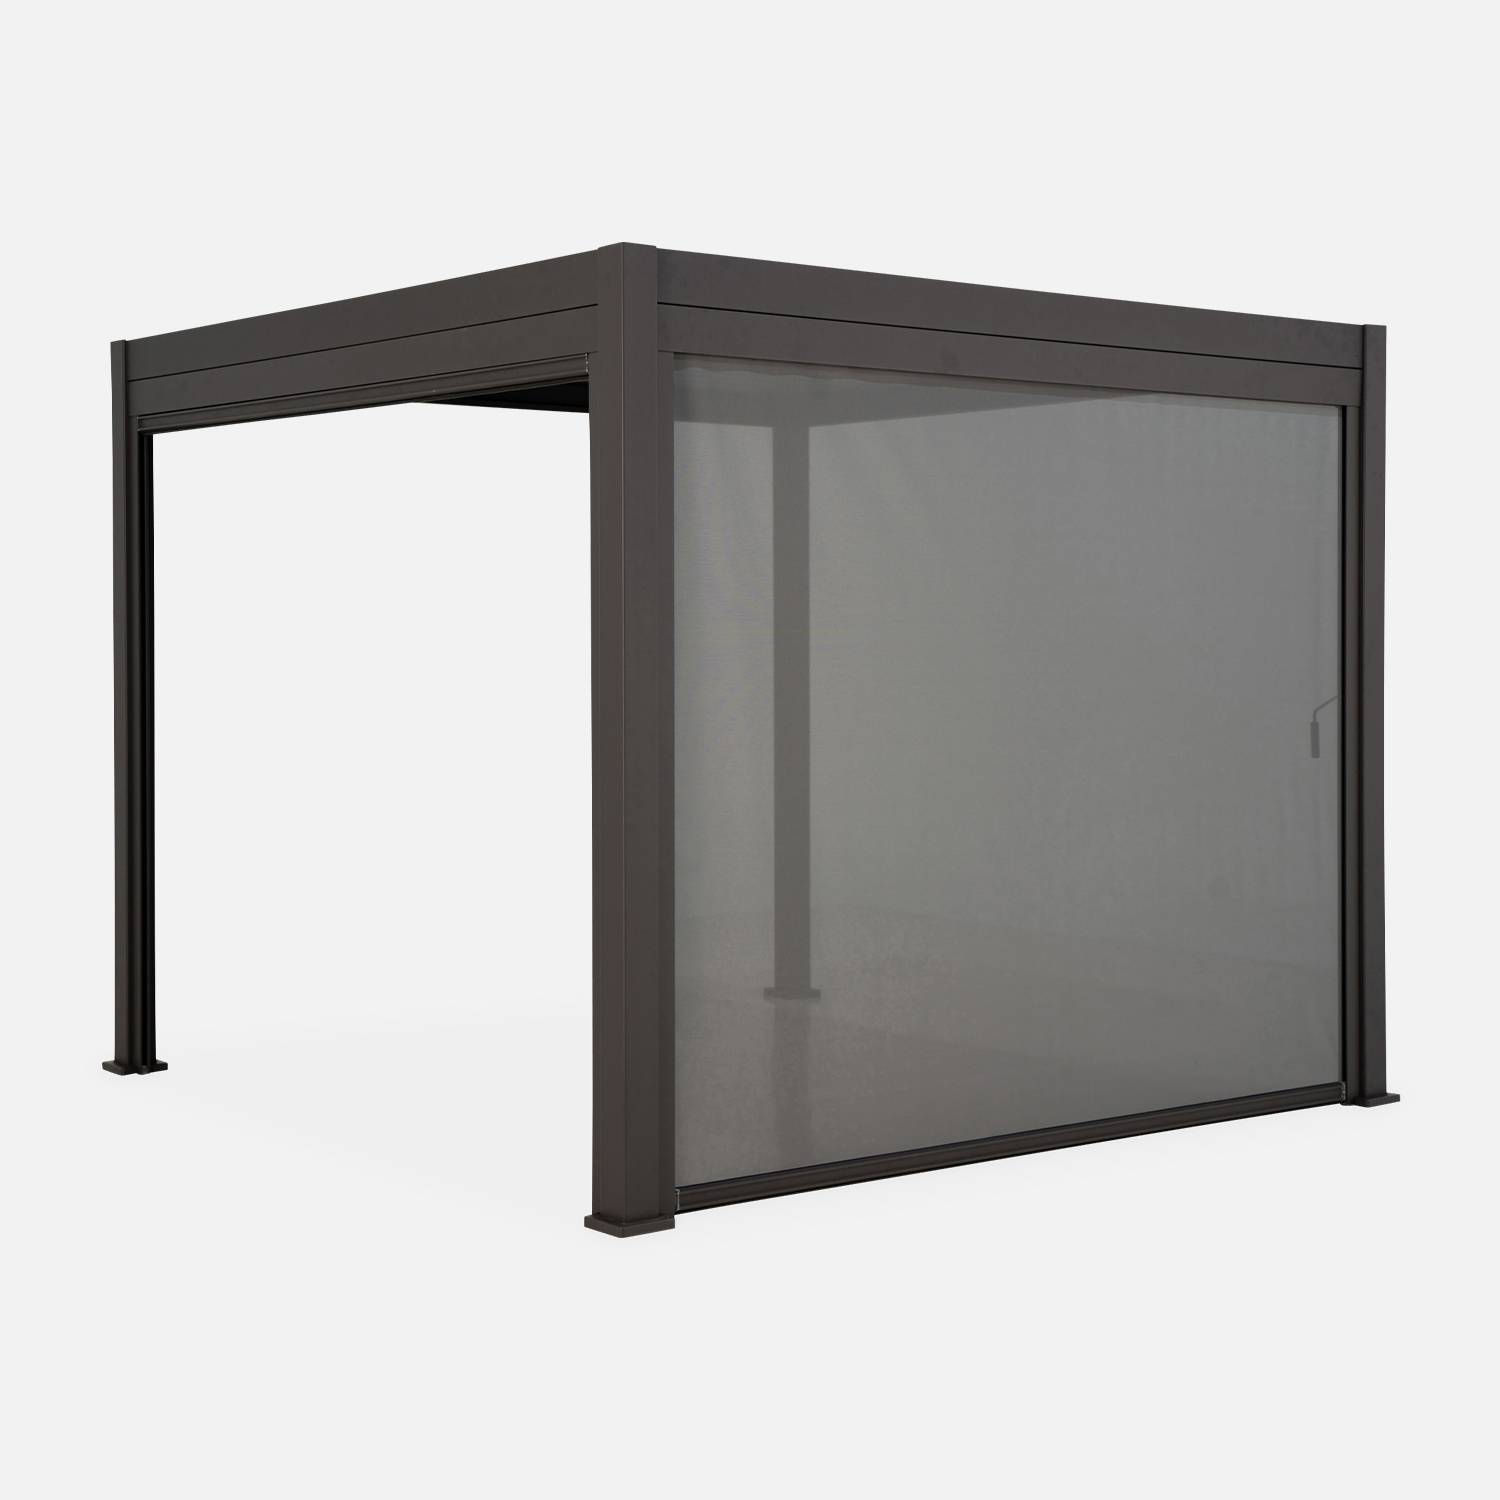 Pergola bioclimatica grigio antracite - Triomphe - 300x400cm, alluminio, con lamelle orientabili + tenda da 400cm,sweeek,Photo3